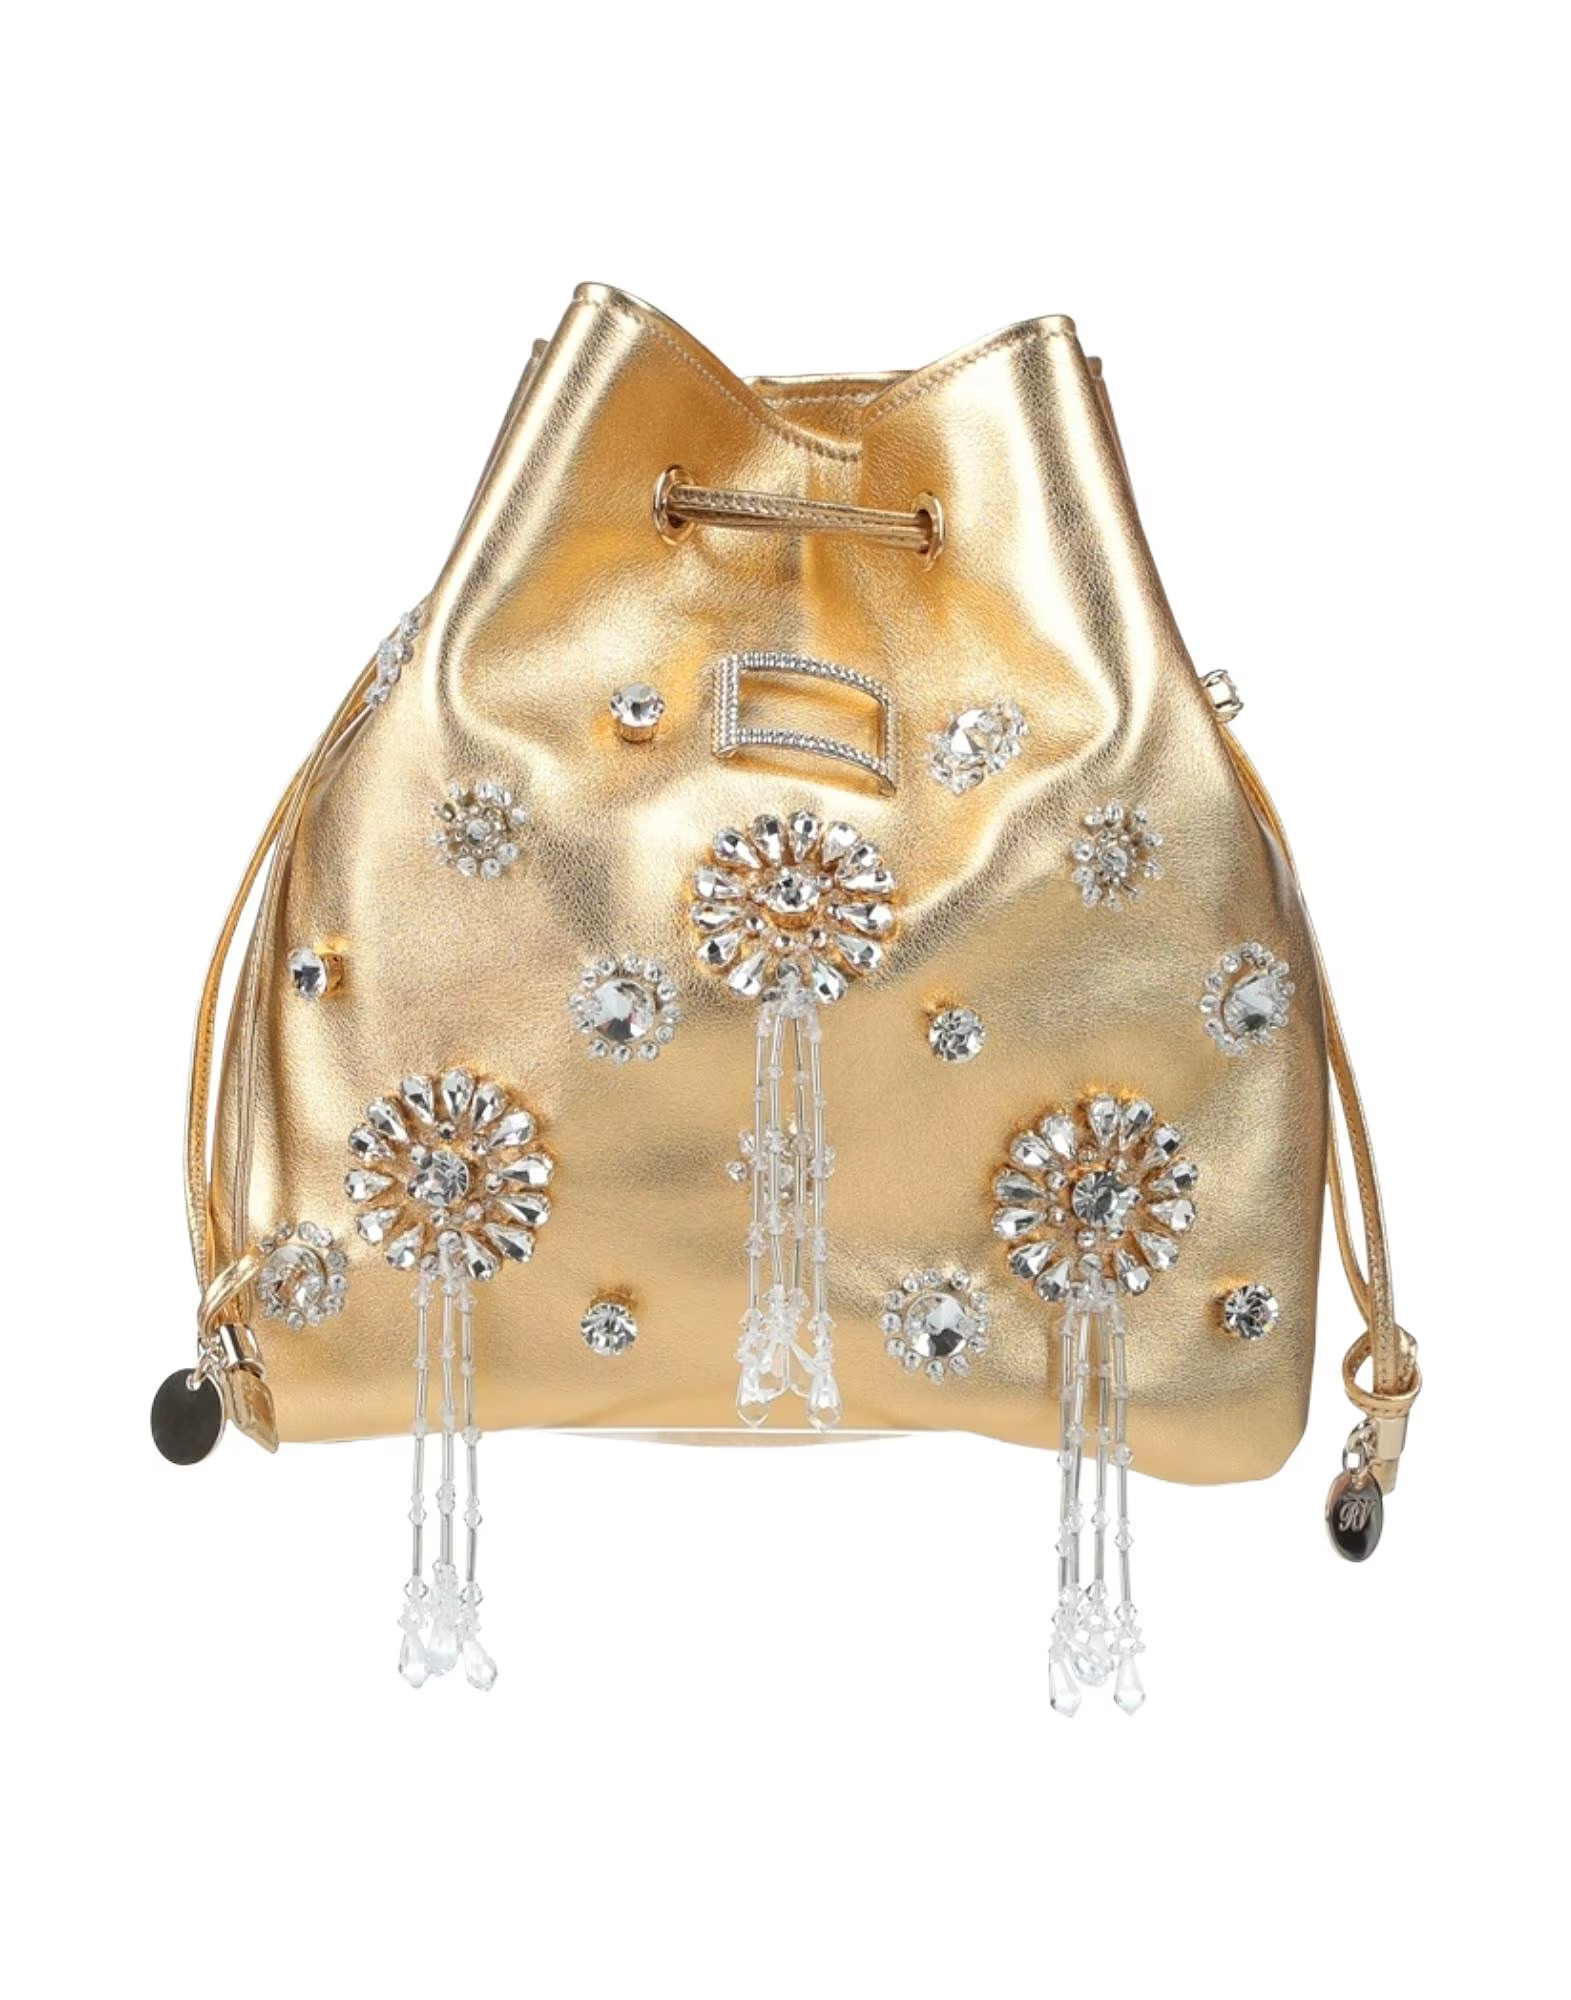 Roger Vivier + Gold Embellished Bag